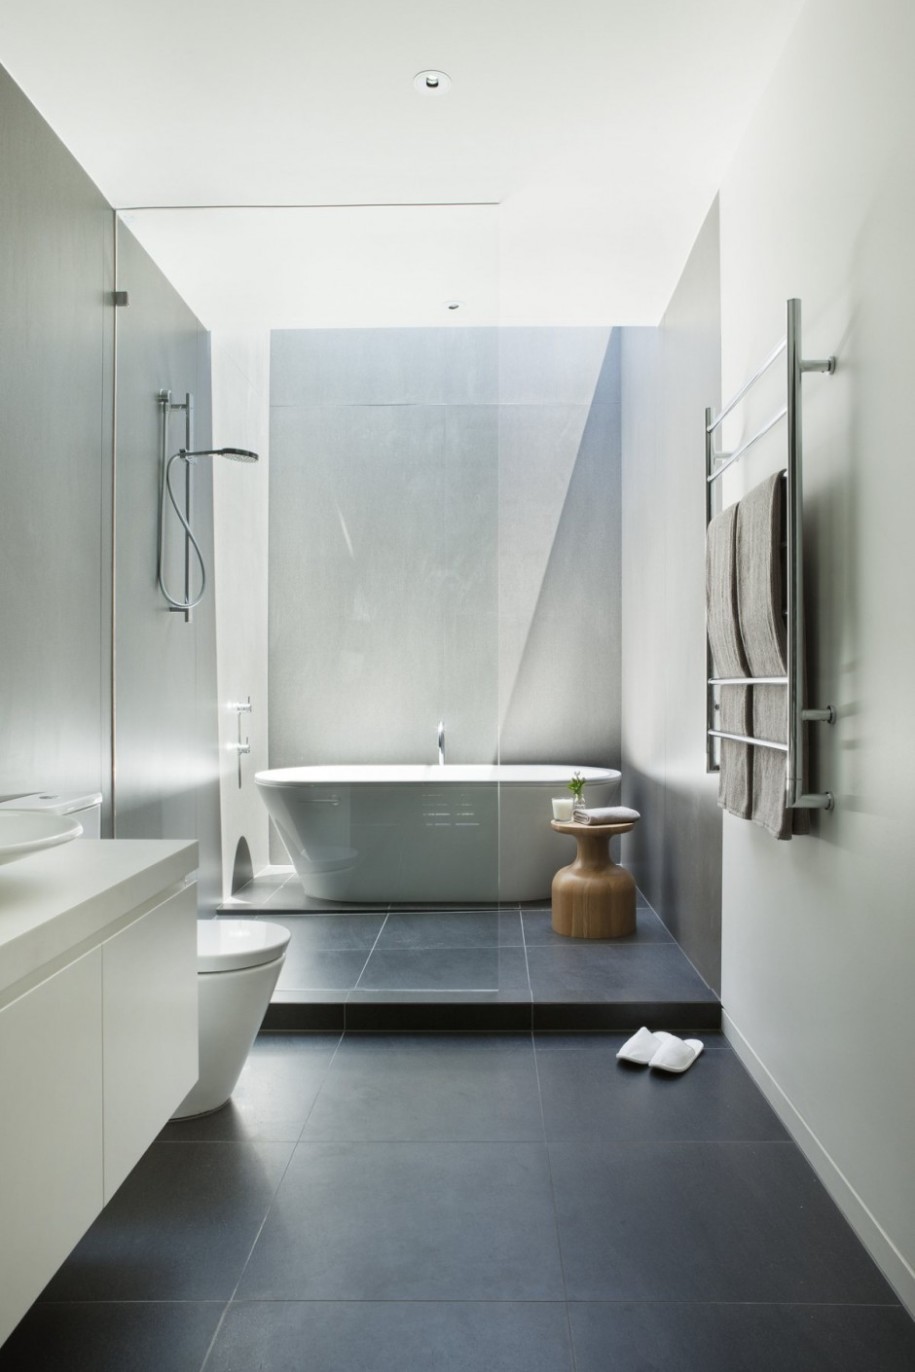 Stylish Bathroom White Ceiling Ceramics Floor Modern Design Bathtub 915x1372 Bathroom